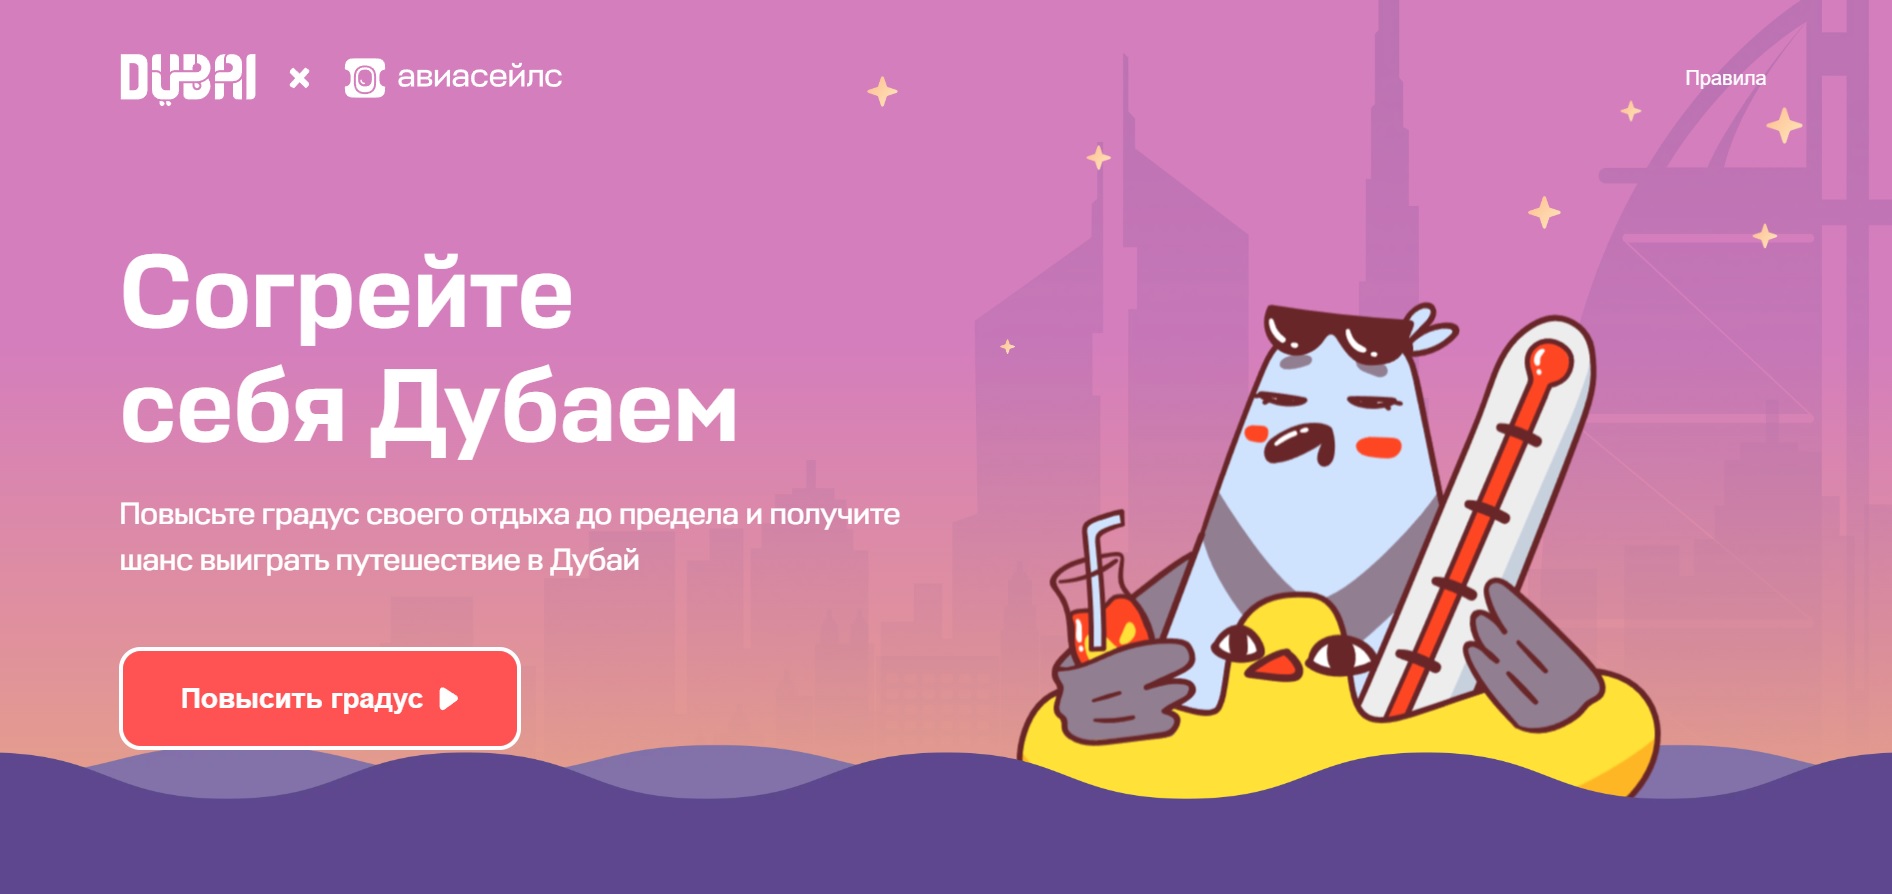 Промо-акция Aviasales.ru: «Согрейте себя Дубаем»